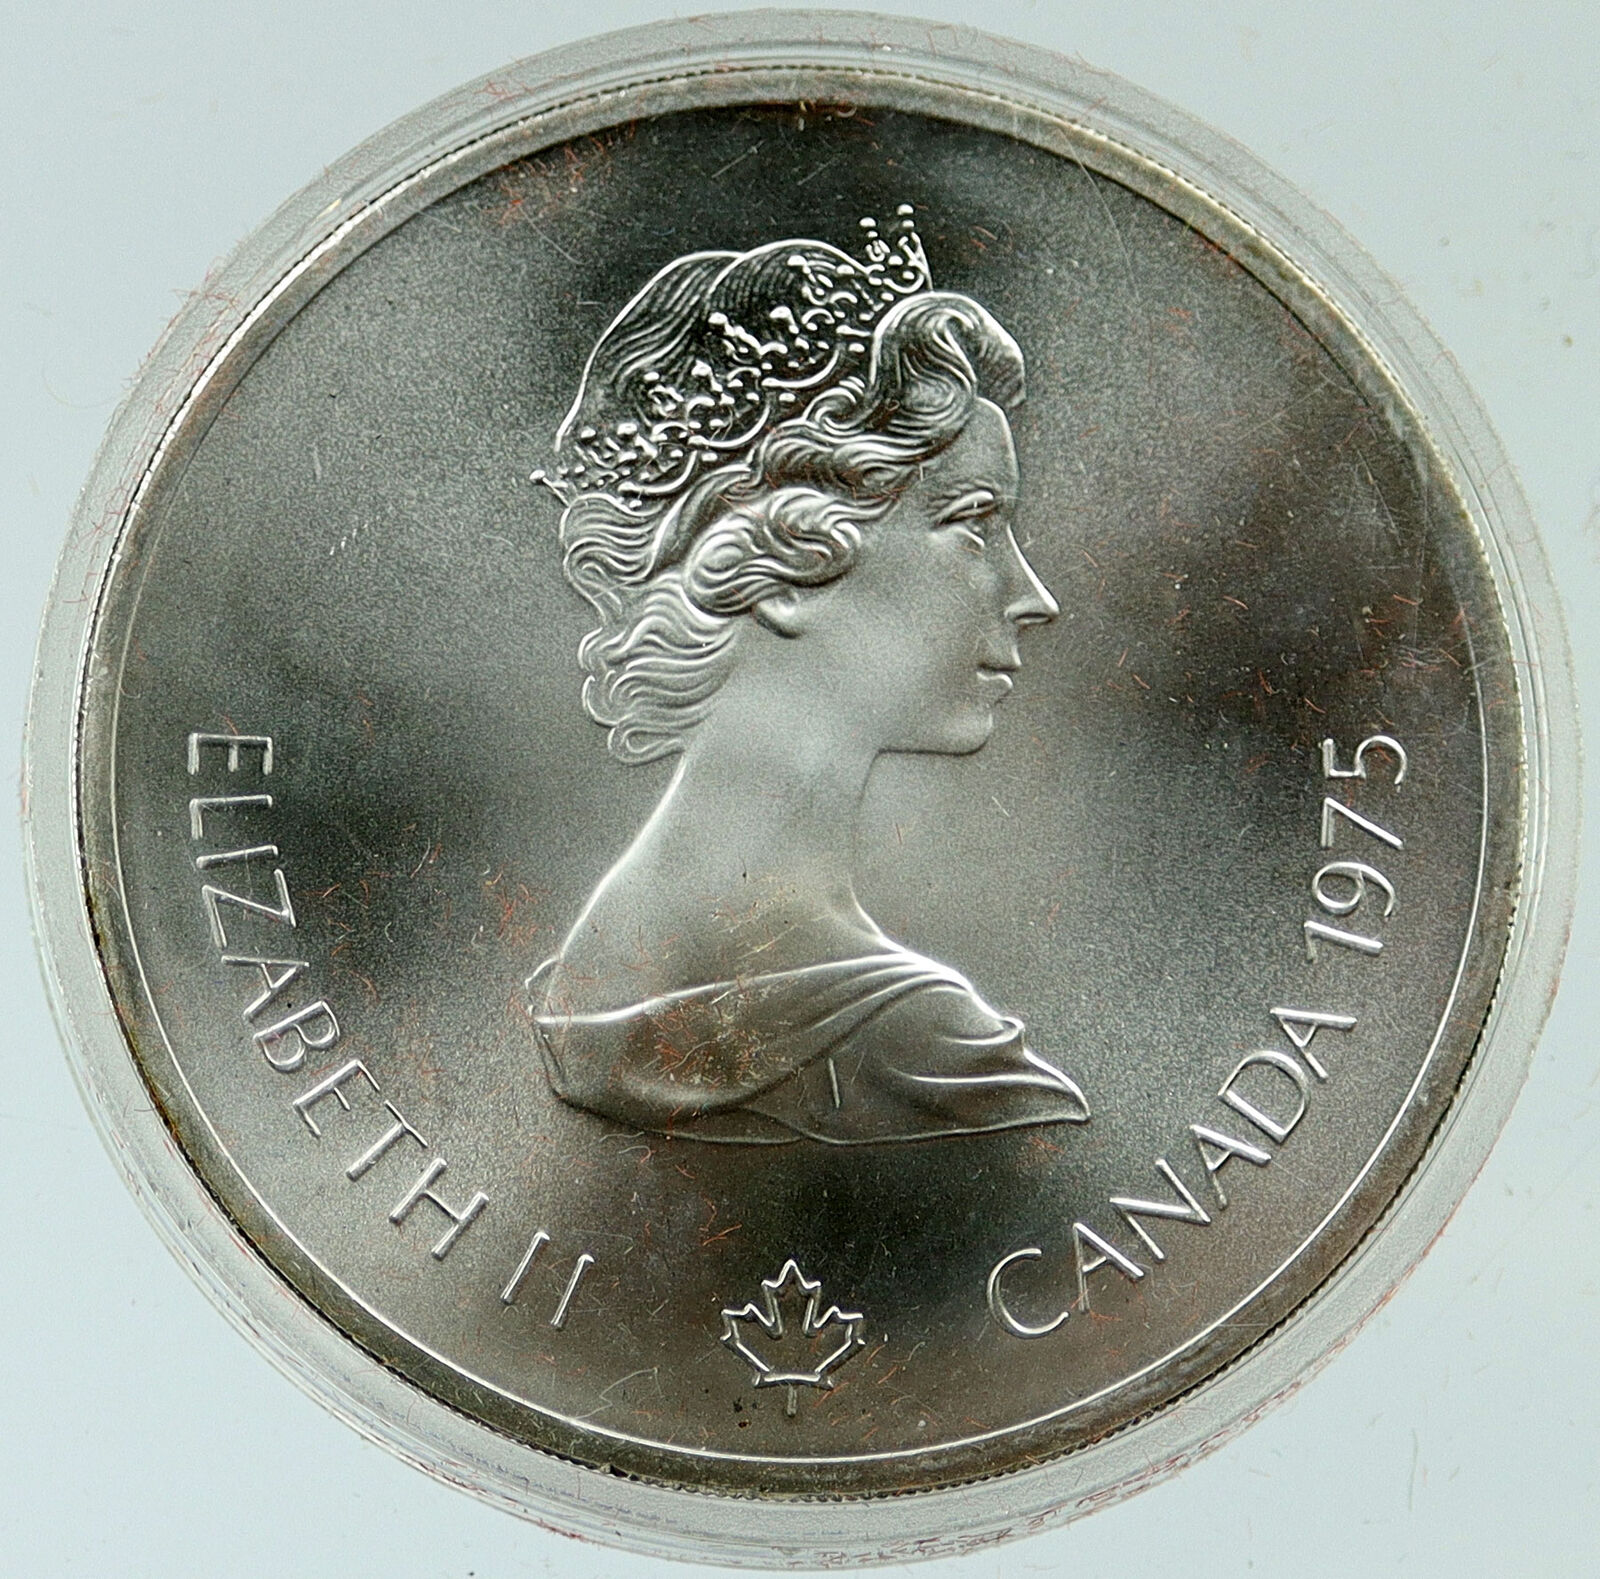 1975 CANADA Queen Elizabeth II Olympics Sailing Crew BU Silver $10 Coin i116934